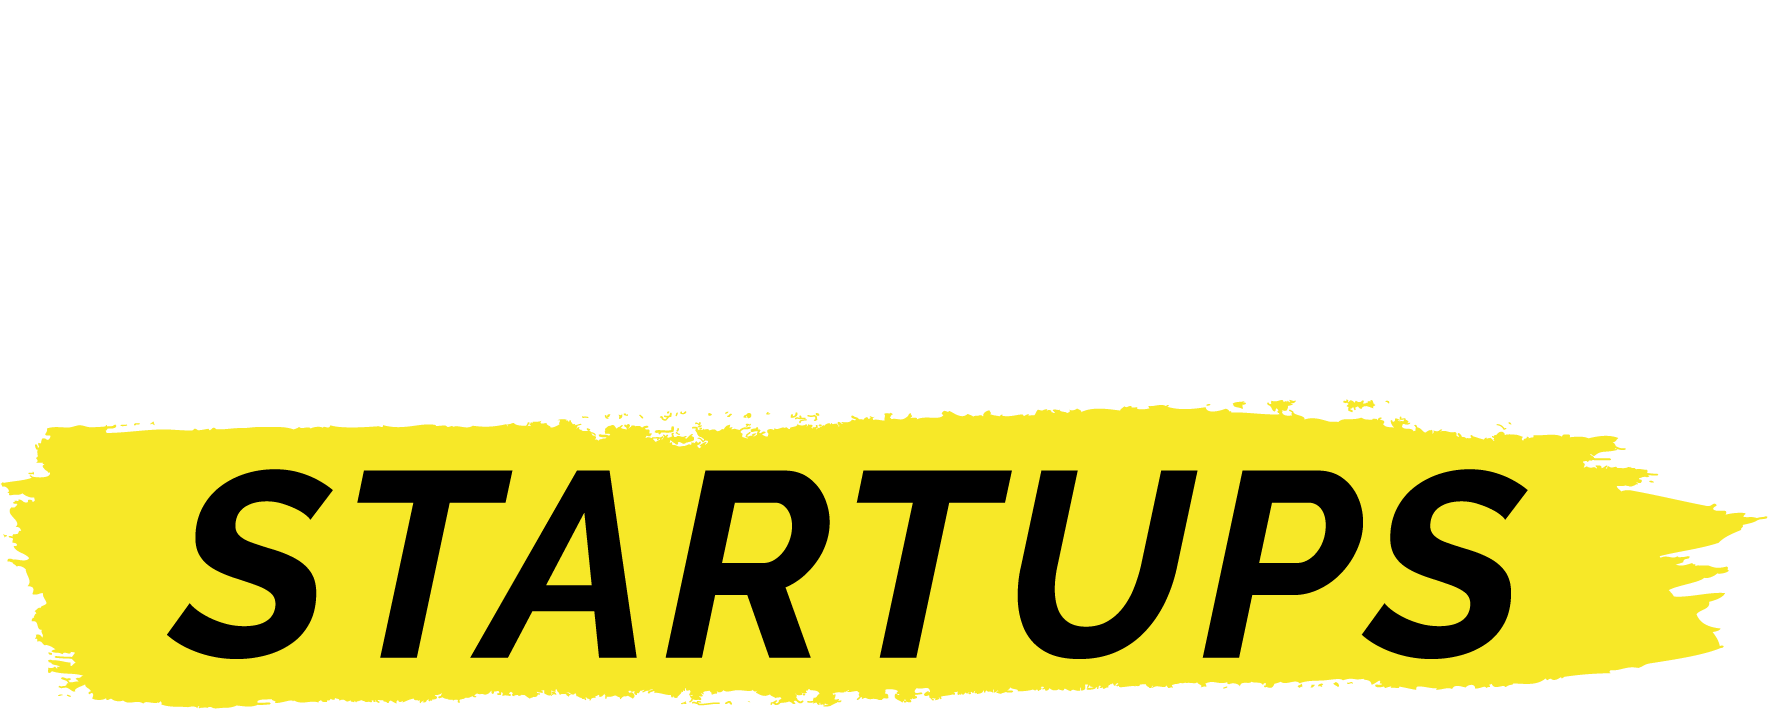 Master em Governança para Startups